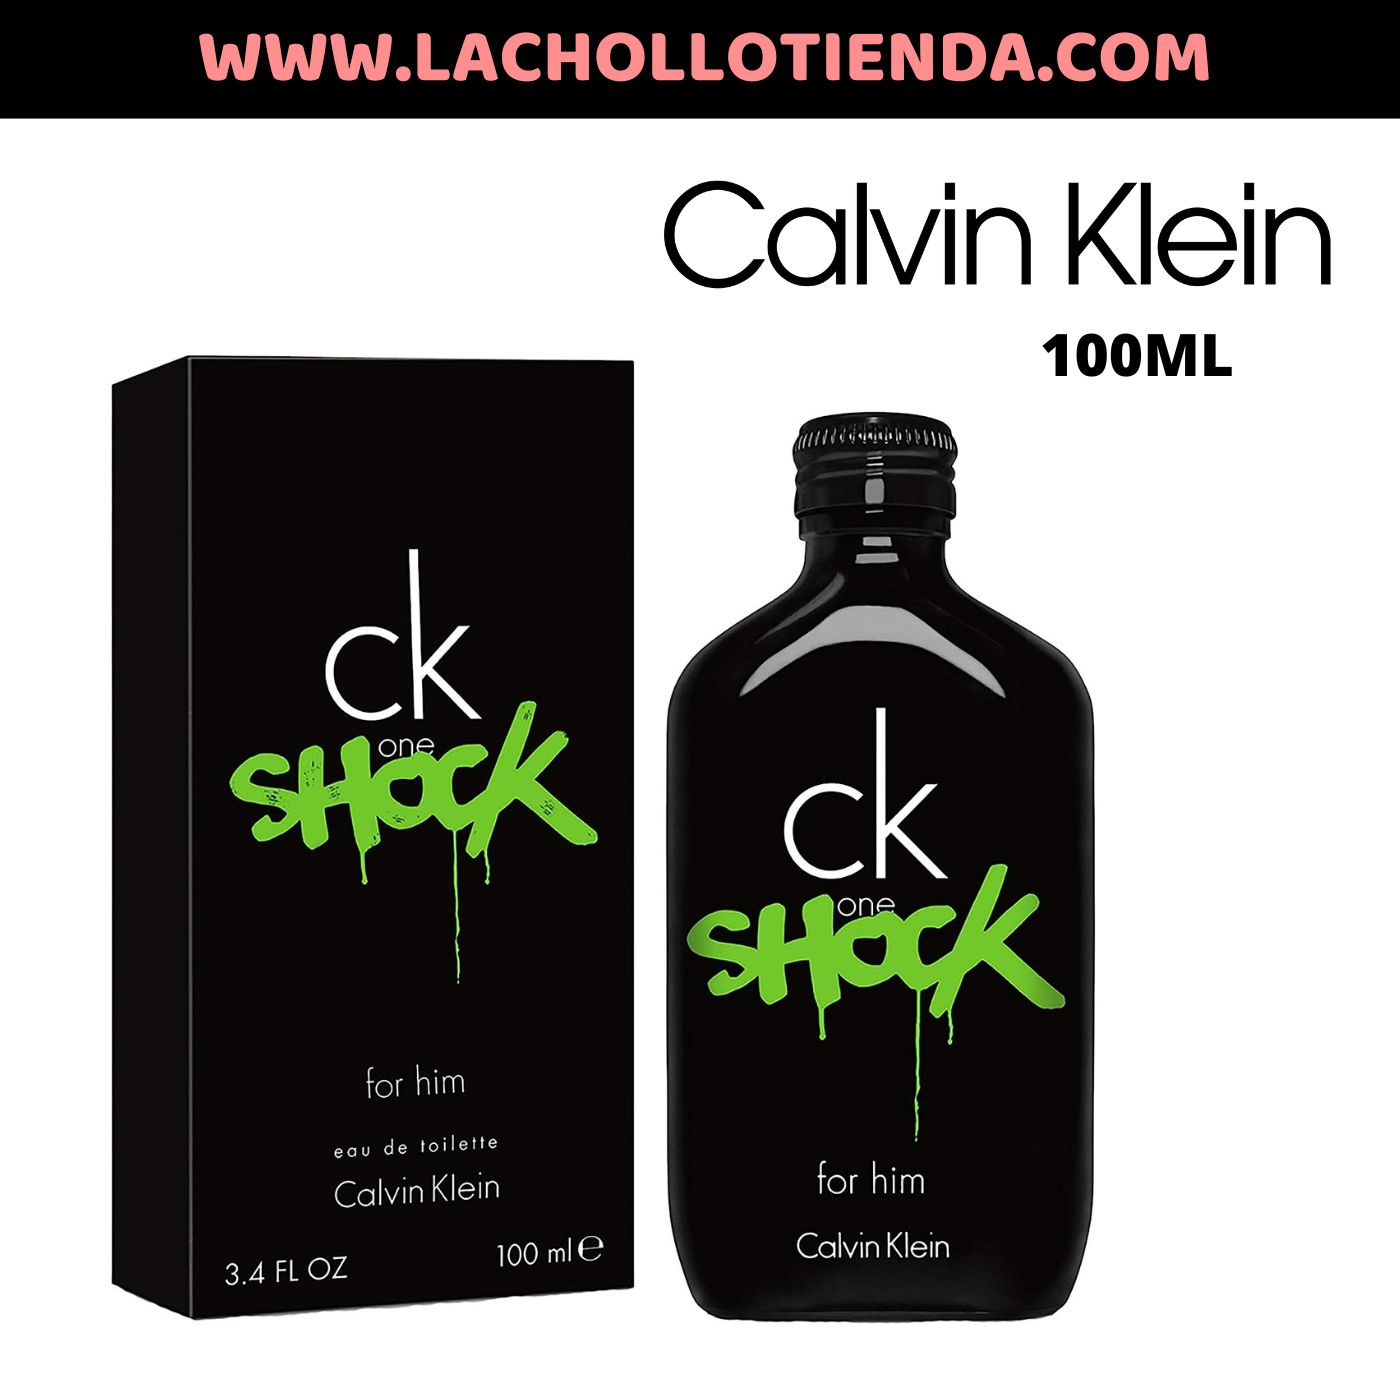 Calvin Klein - CK ONE SHOCK FOR HIM 100ml